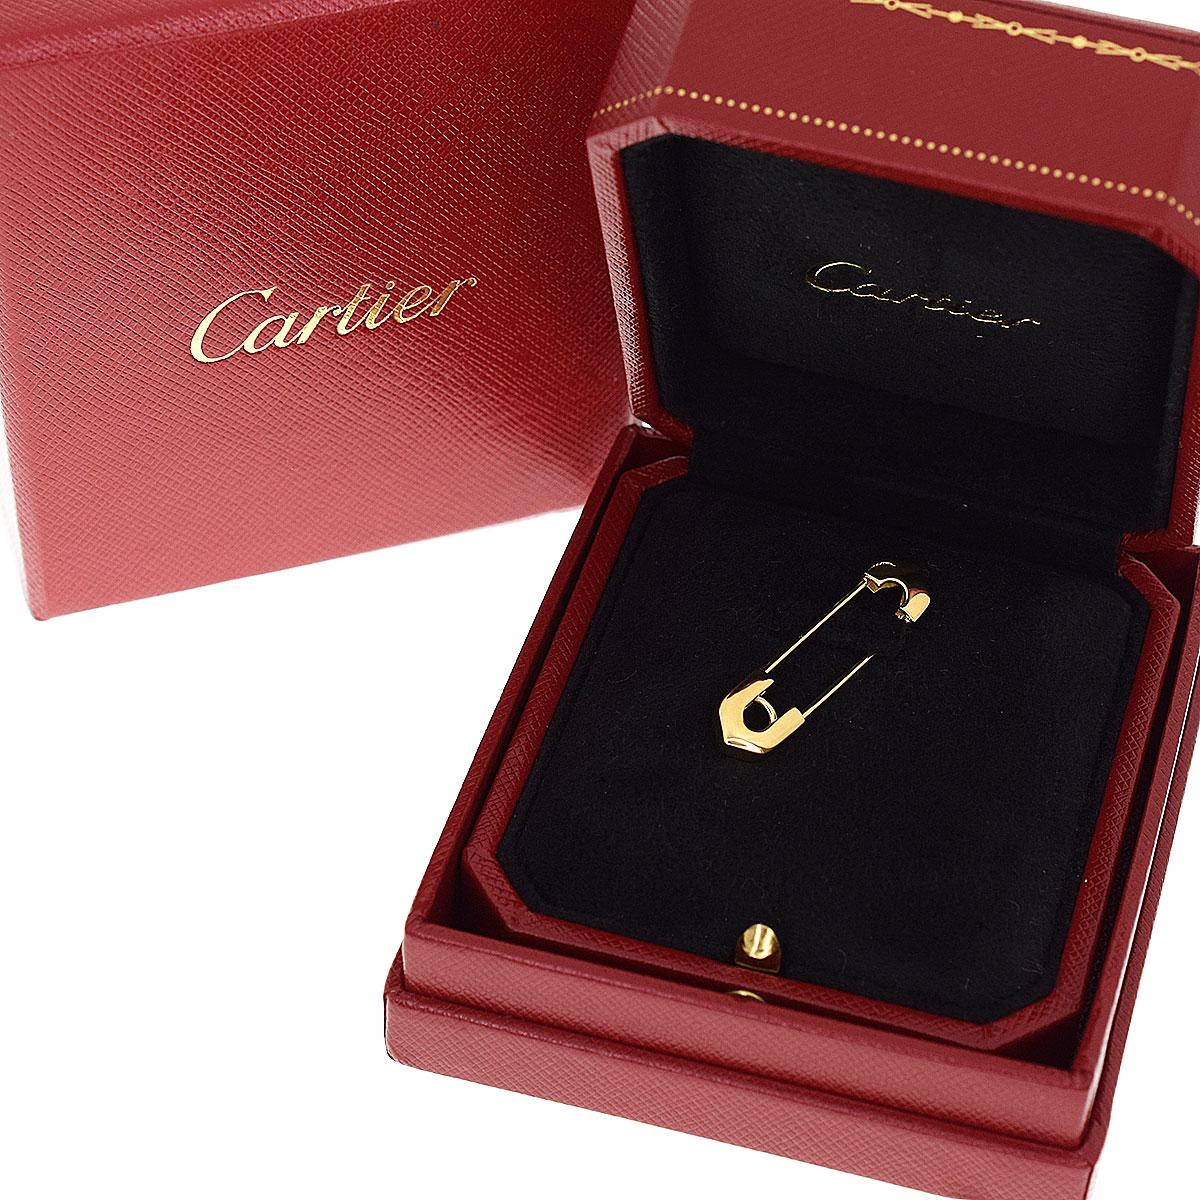 Cartier Safety Pin 18 Karat Yellow Gold Brooch 2